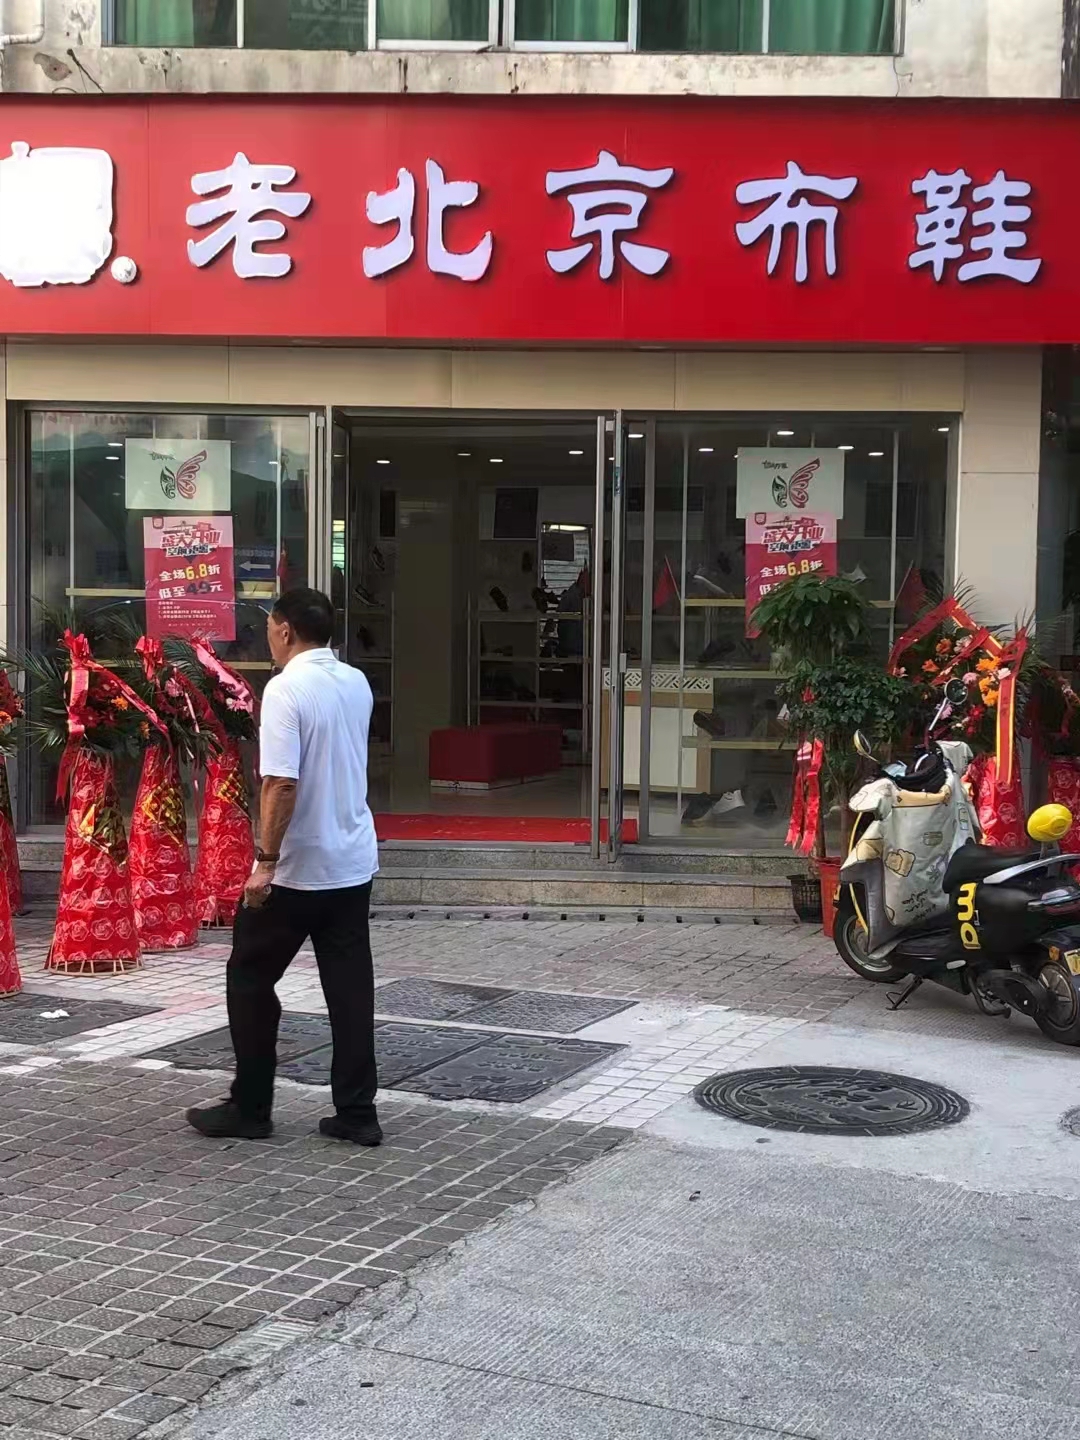 贺：京城印象老北京布鞋加盟店湖北江老板盛大开业！